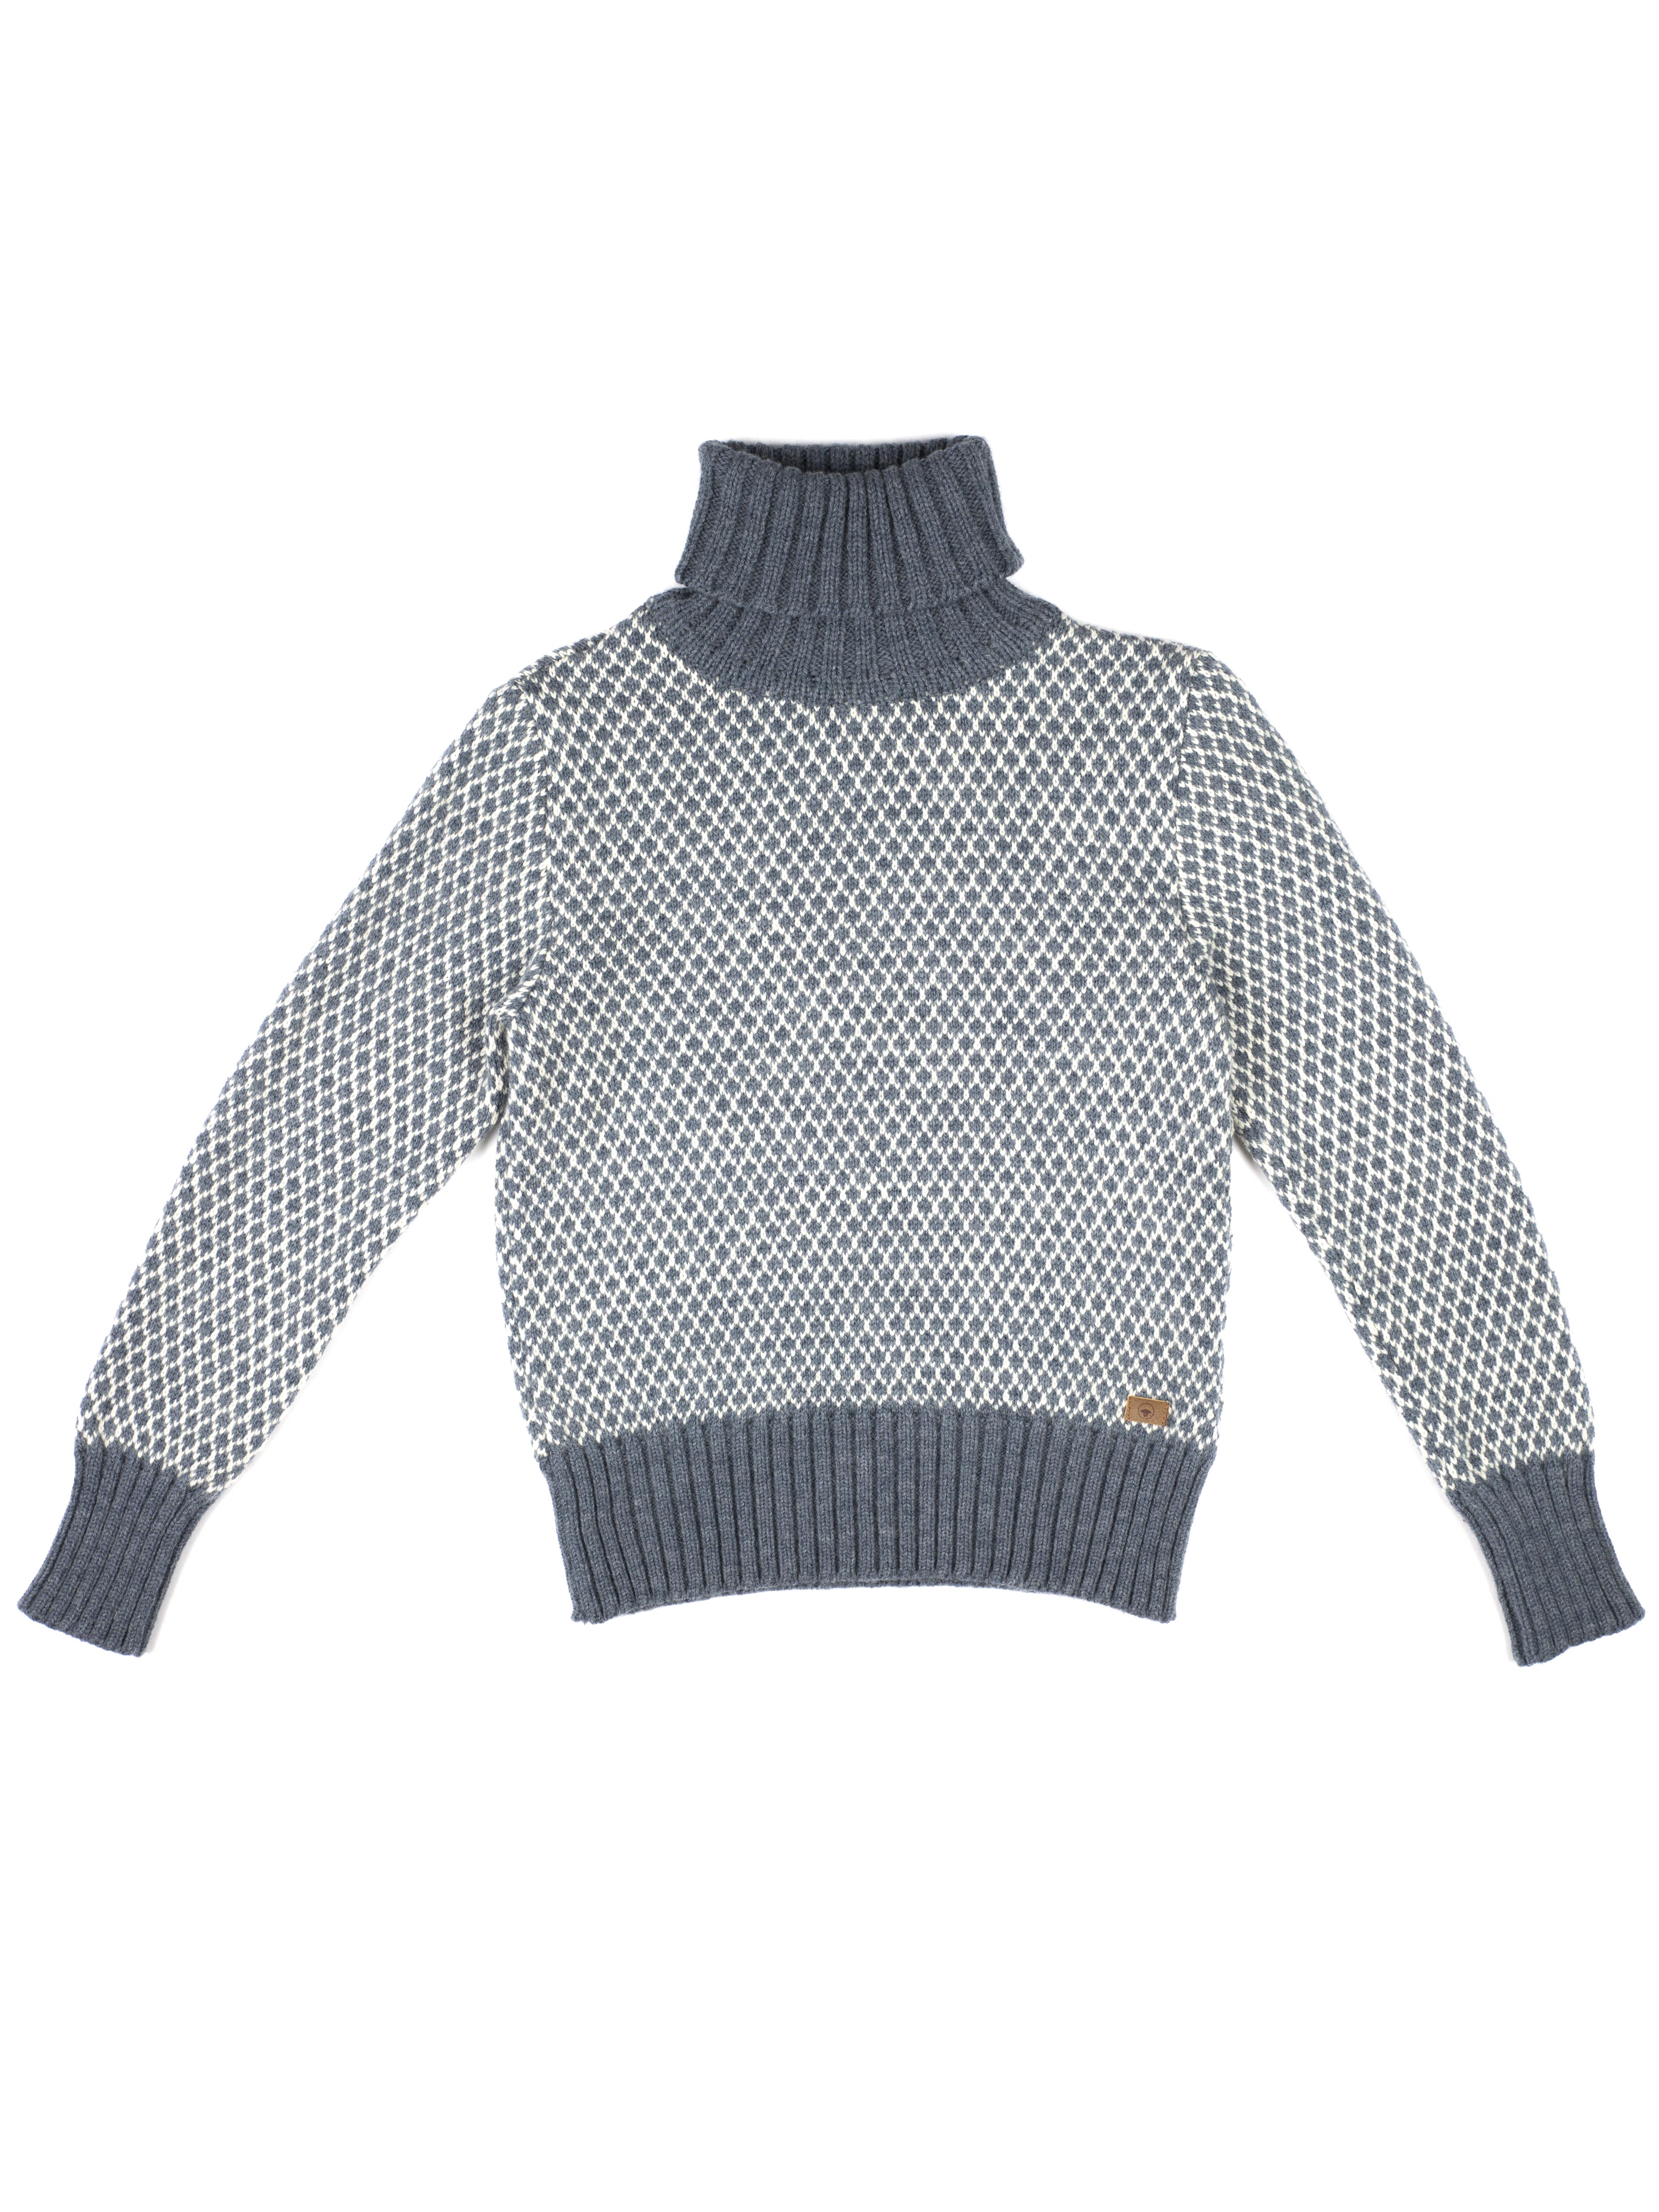 sweater, Merinould, Liv, Silver blue, Fuza - STRIK - bySKAGEN